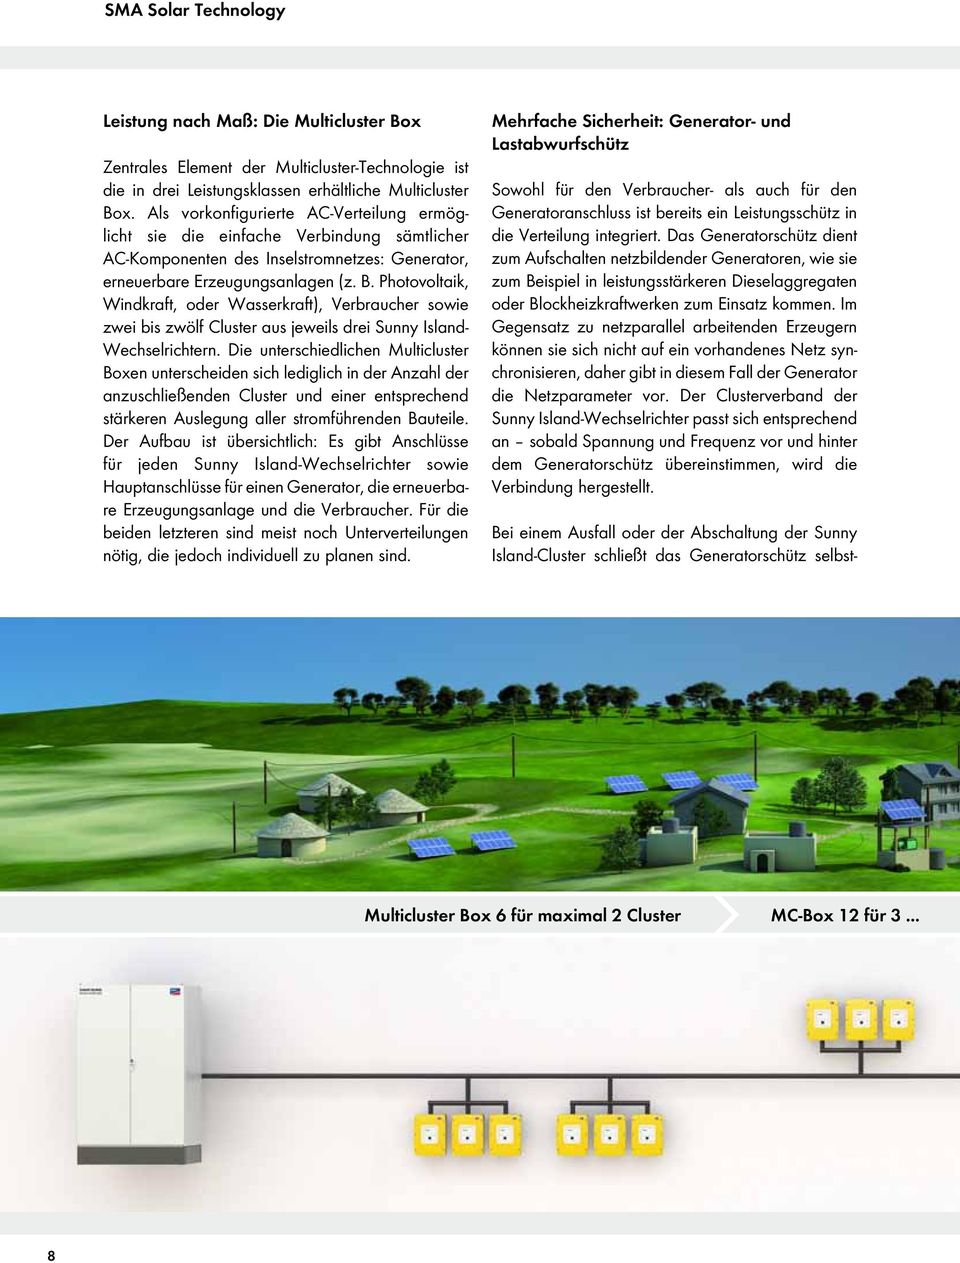 Photovoltaik, Windkraft, oder Wasserkraft), Verbraucher sowie zwei bis zwölf Cluster aus jeweils drei Sunny Island- Wechselrichtern.